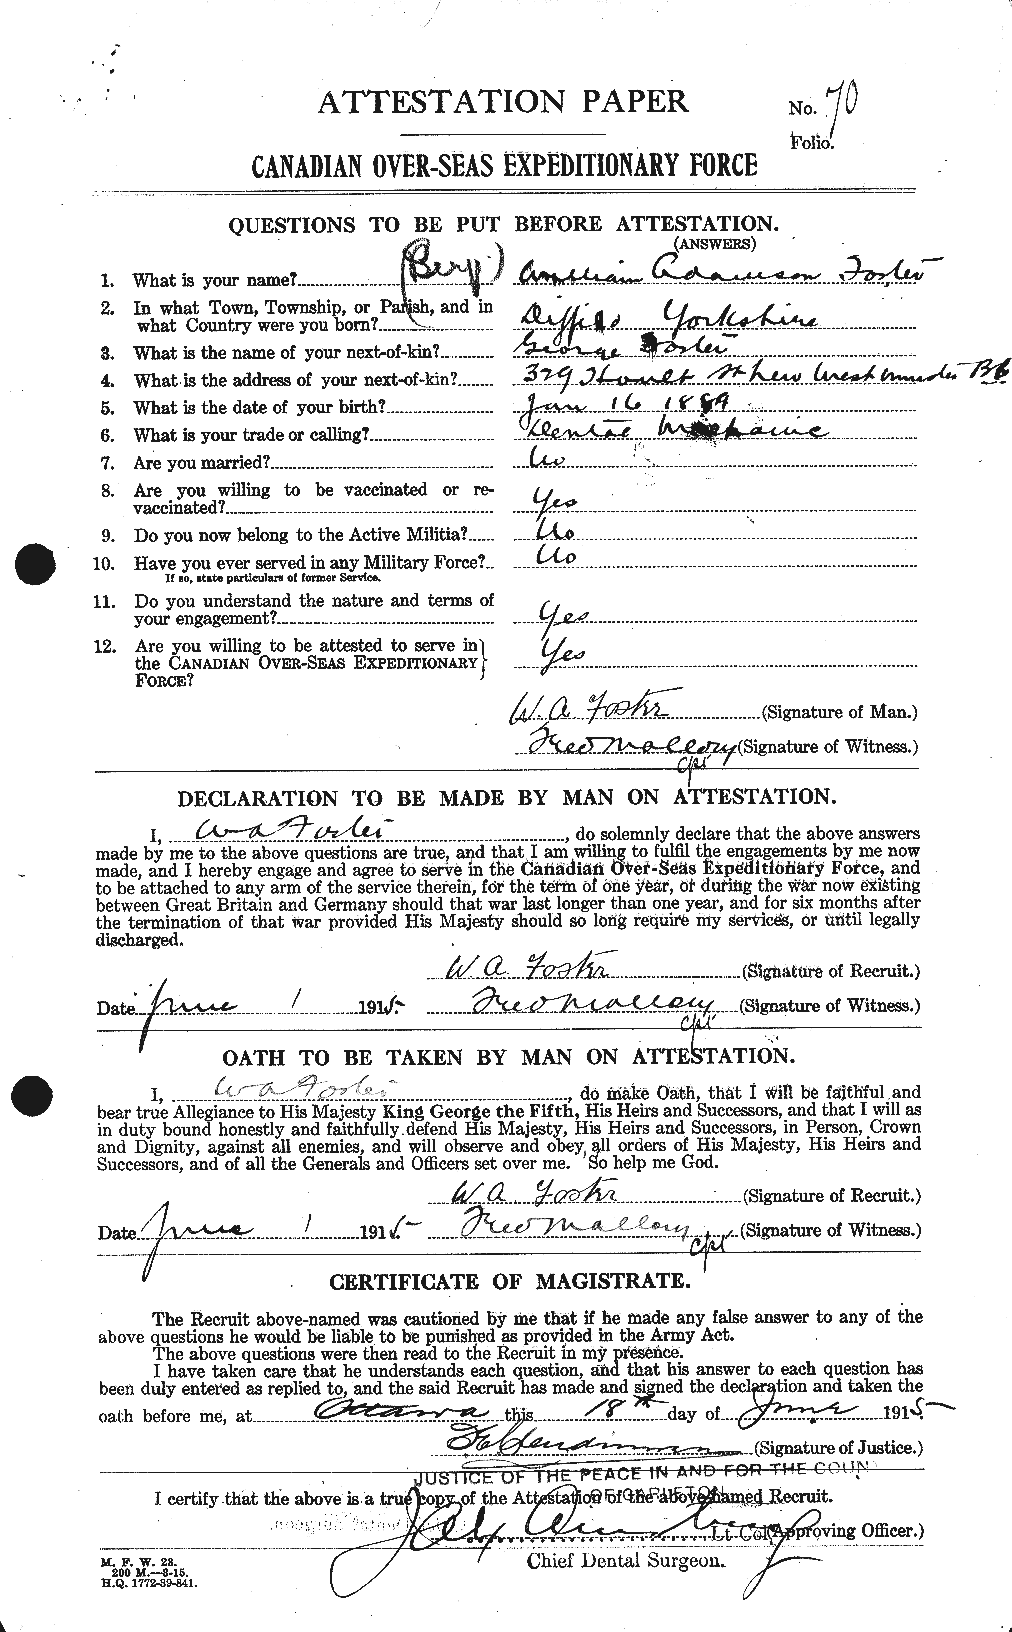 Dossiers du Personnel de la Première Guerre mondiale - CEC 328724a